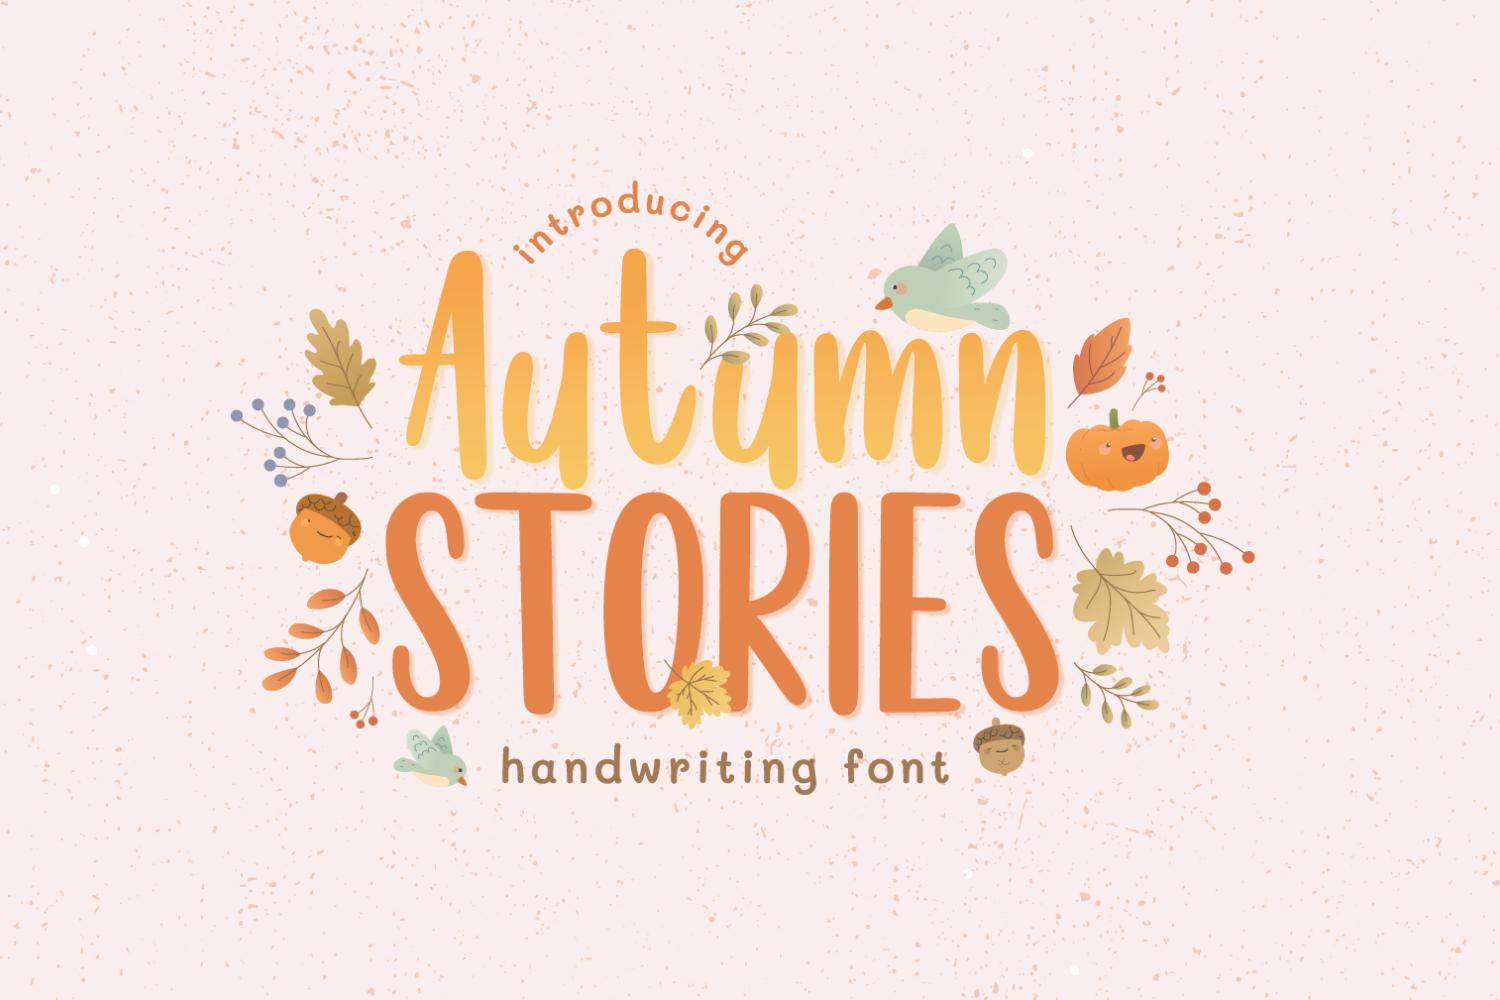 Autumn Stories Font